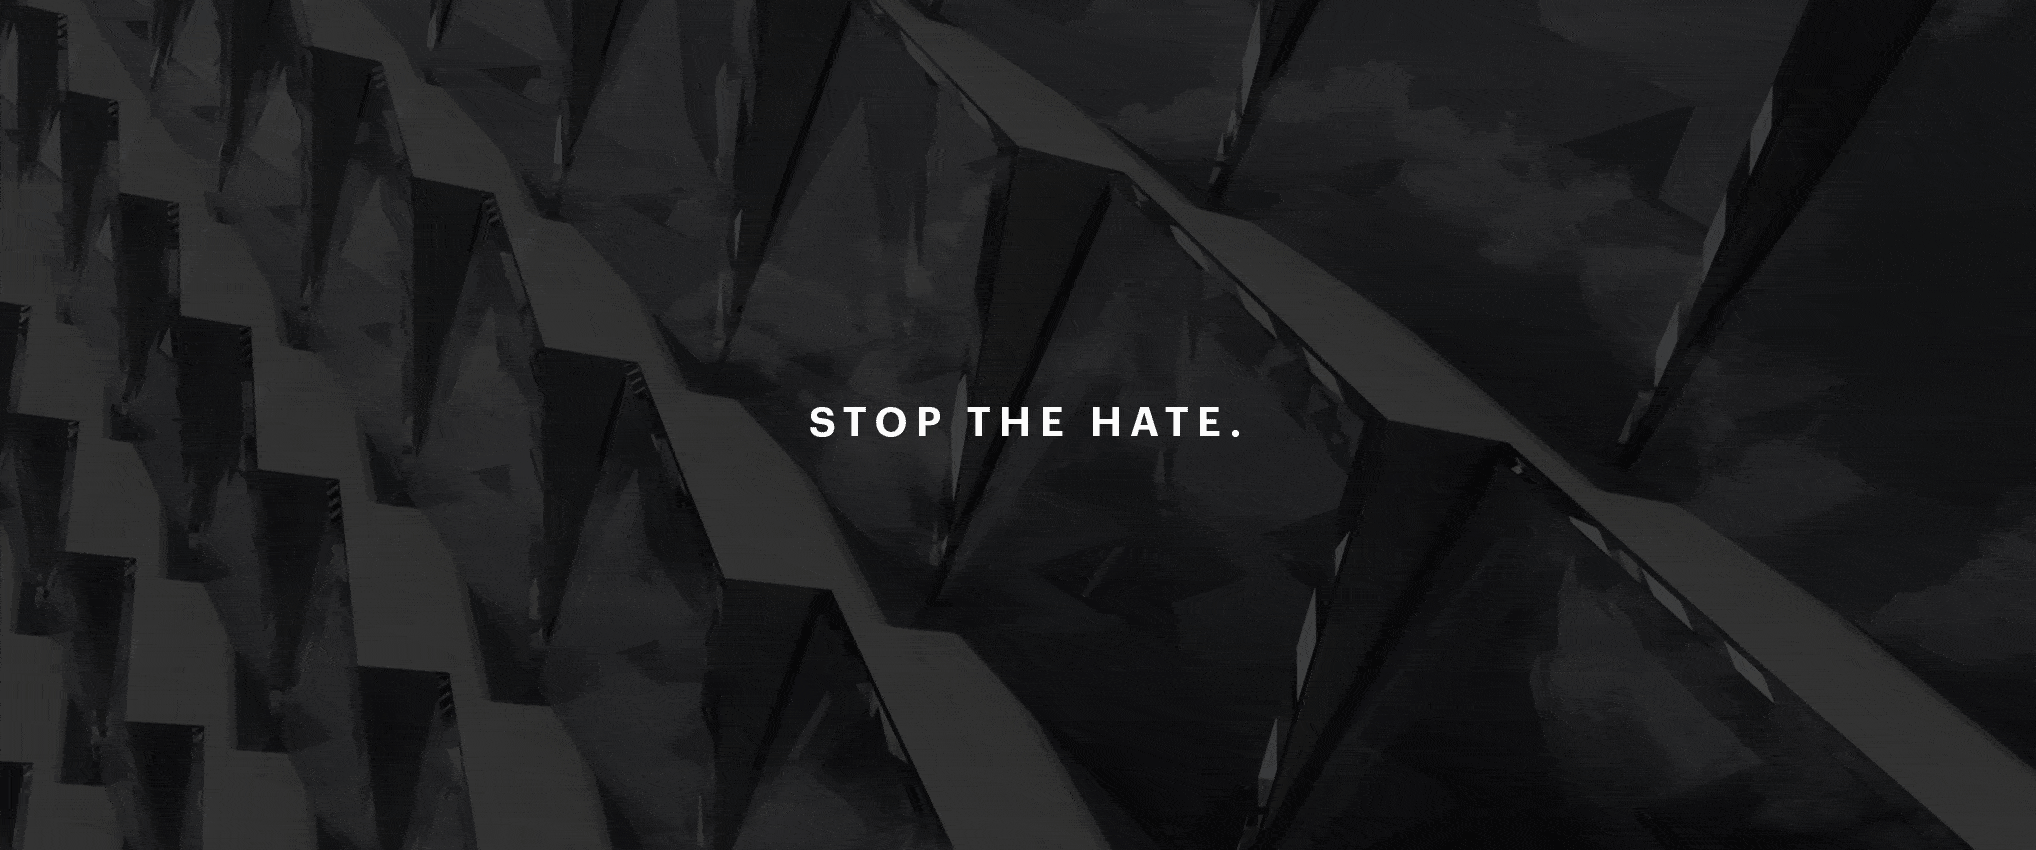 仇恨和暴力必须立即停止